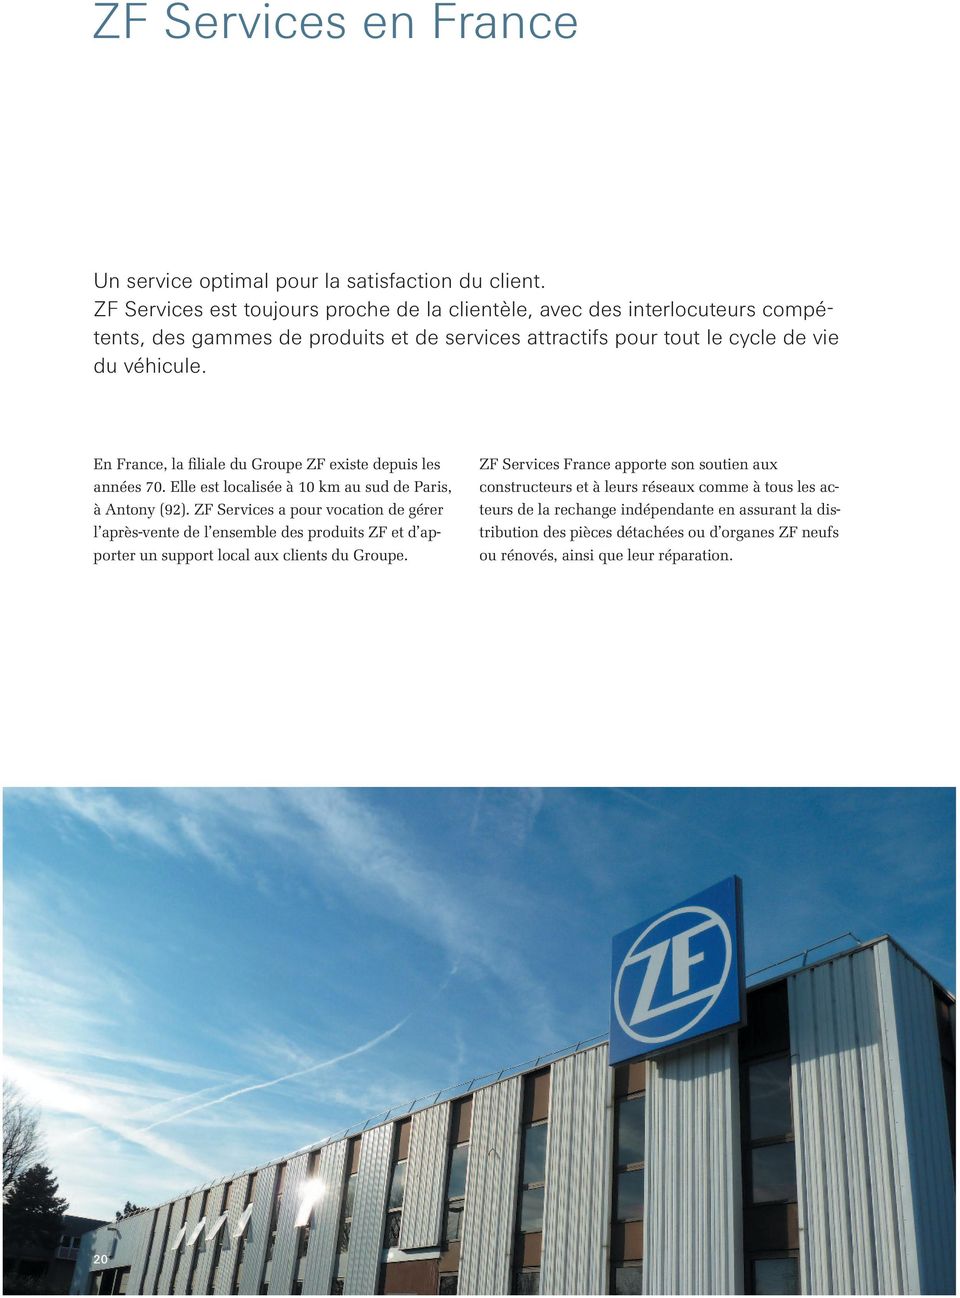 En France, la filiale du Groupe ZF existe depuis les années 70. Elle est localisée à 10 km au sud de Paris, à Antony (92).